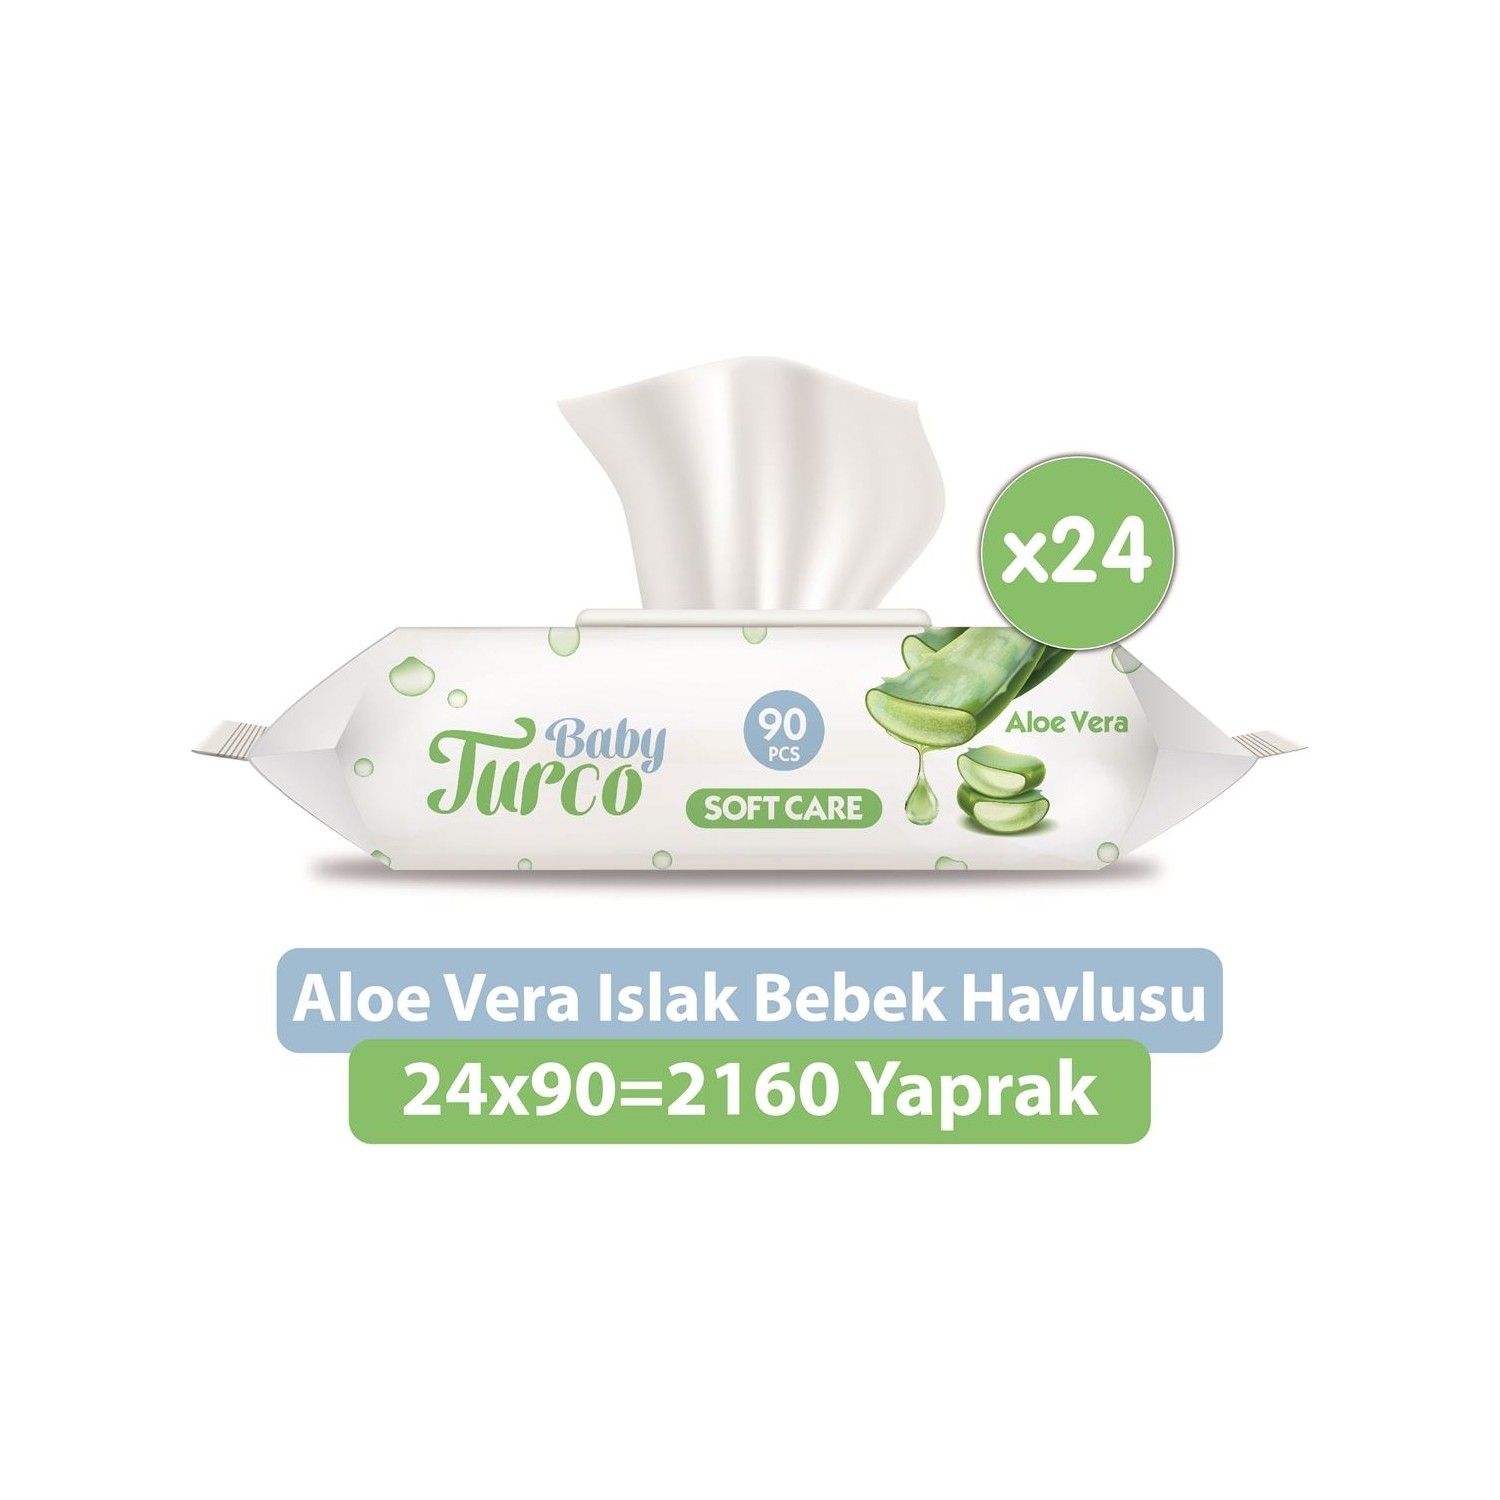 Baby Turco Softcare Aloe Vera 90 Yaprak 24’lü Paket Islak Bebek Havlusu﻿﻿﻿